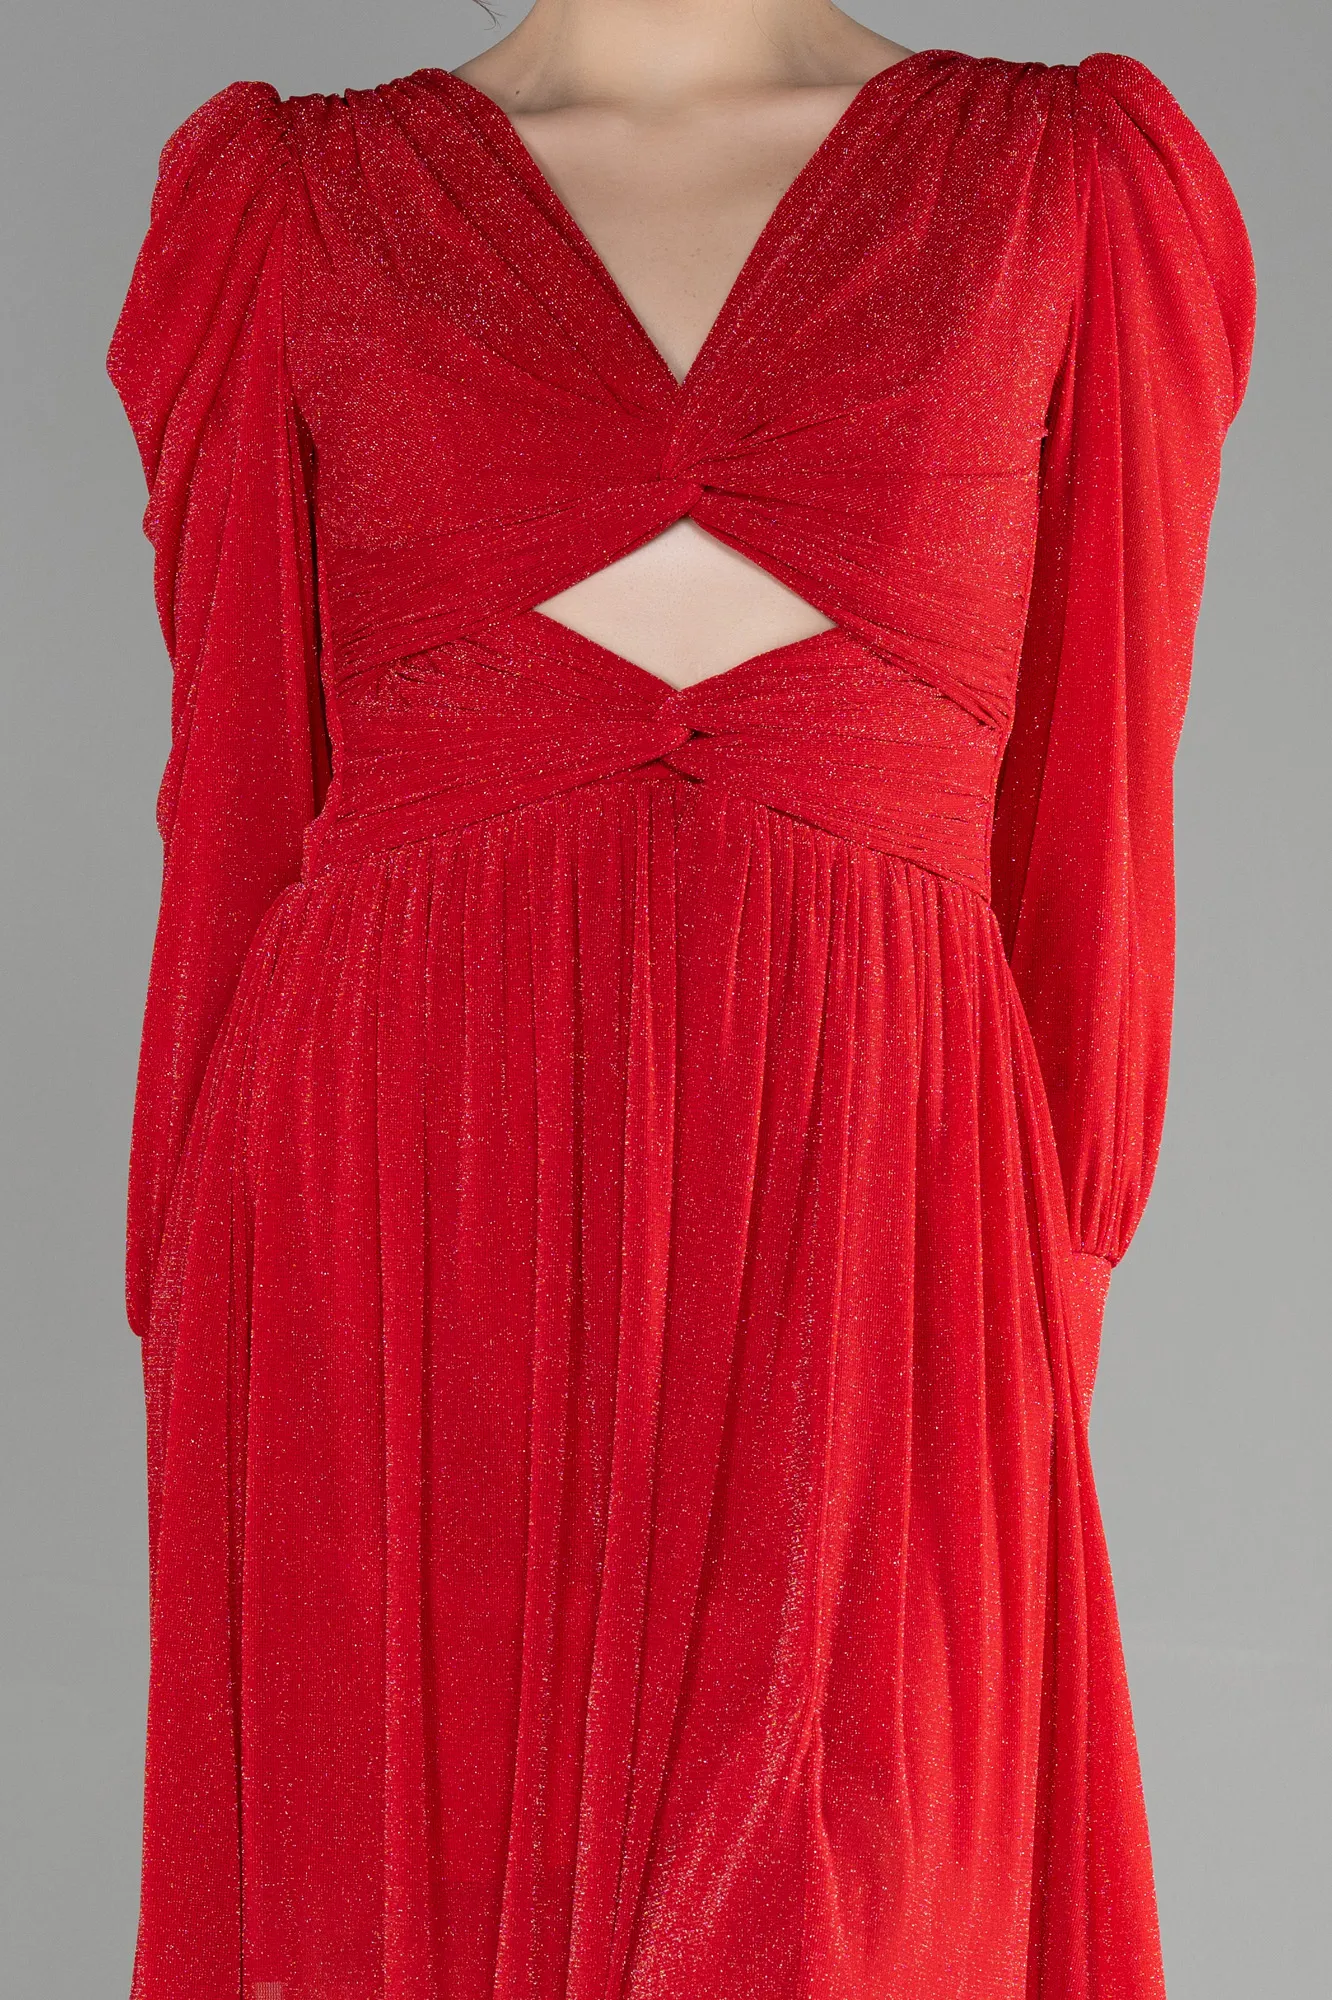 Red-Short Invitation Dress ABK1839